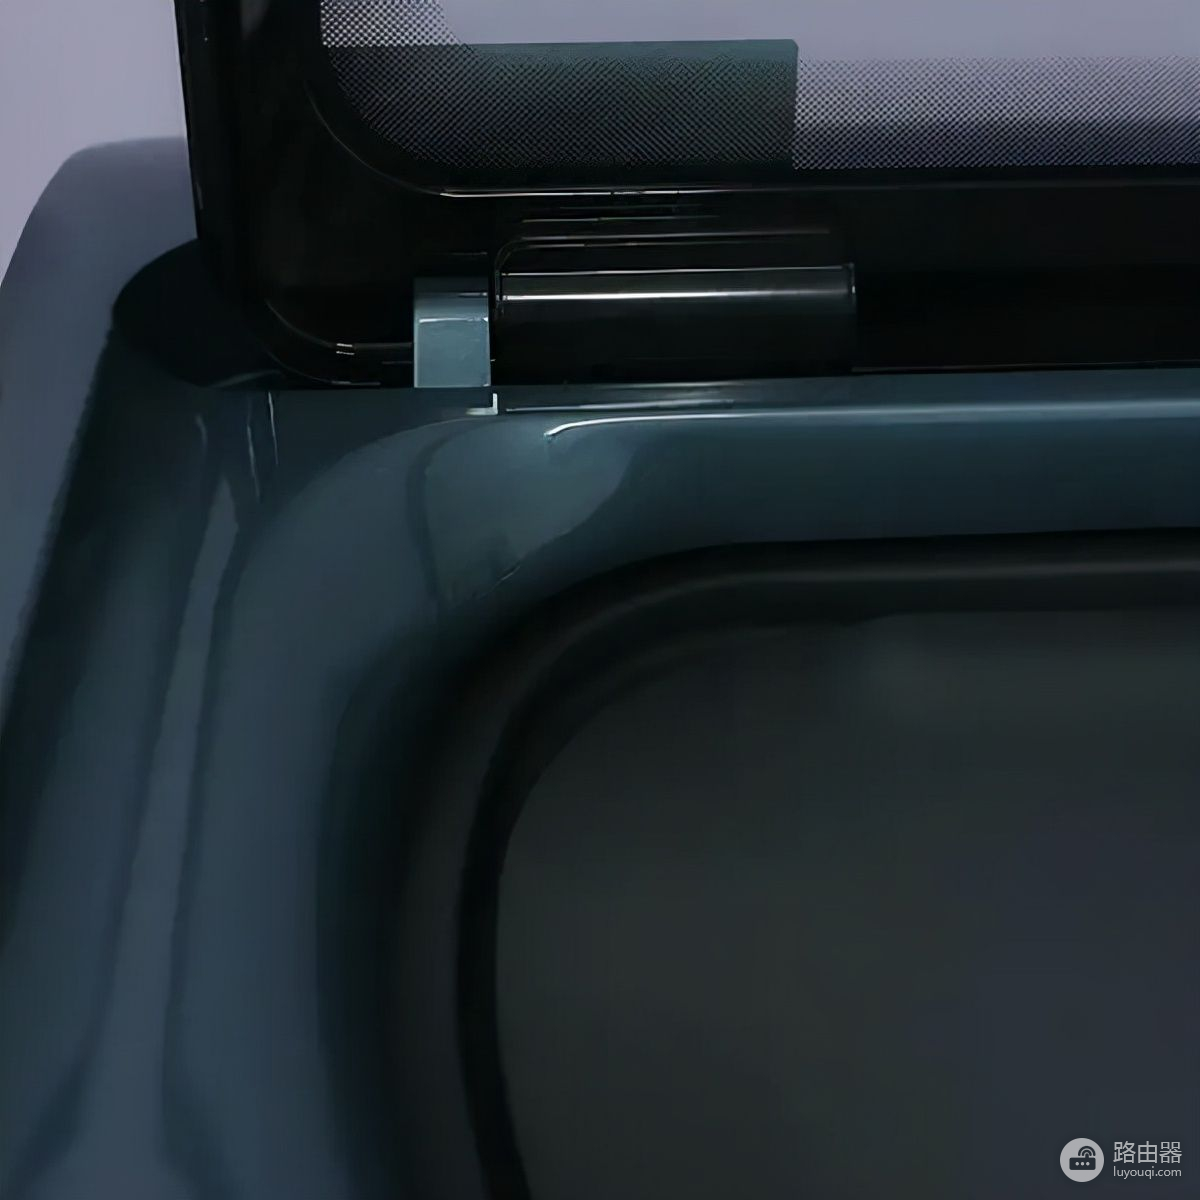 双子舱分区洗衣机(笔记本电脑如何分区洗衣机)